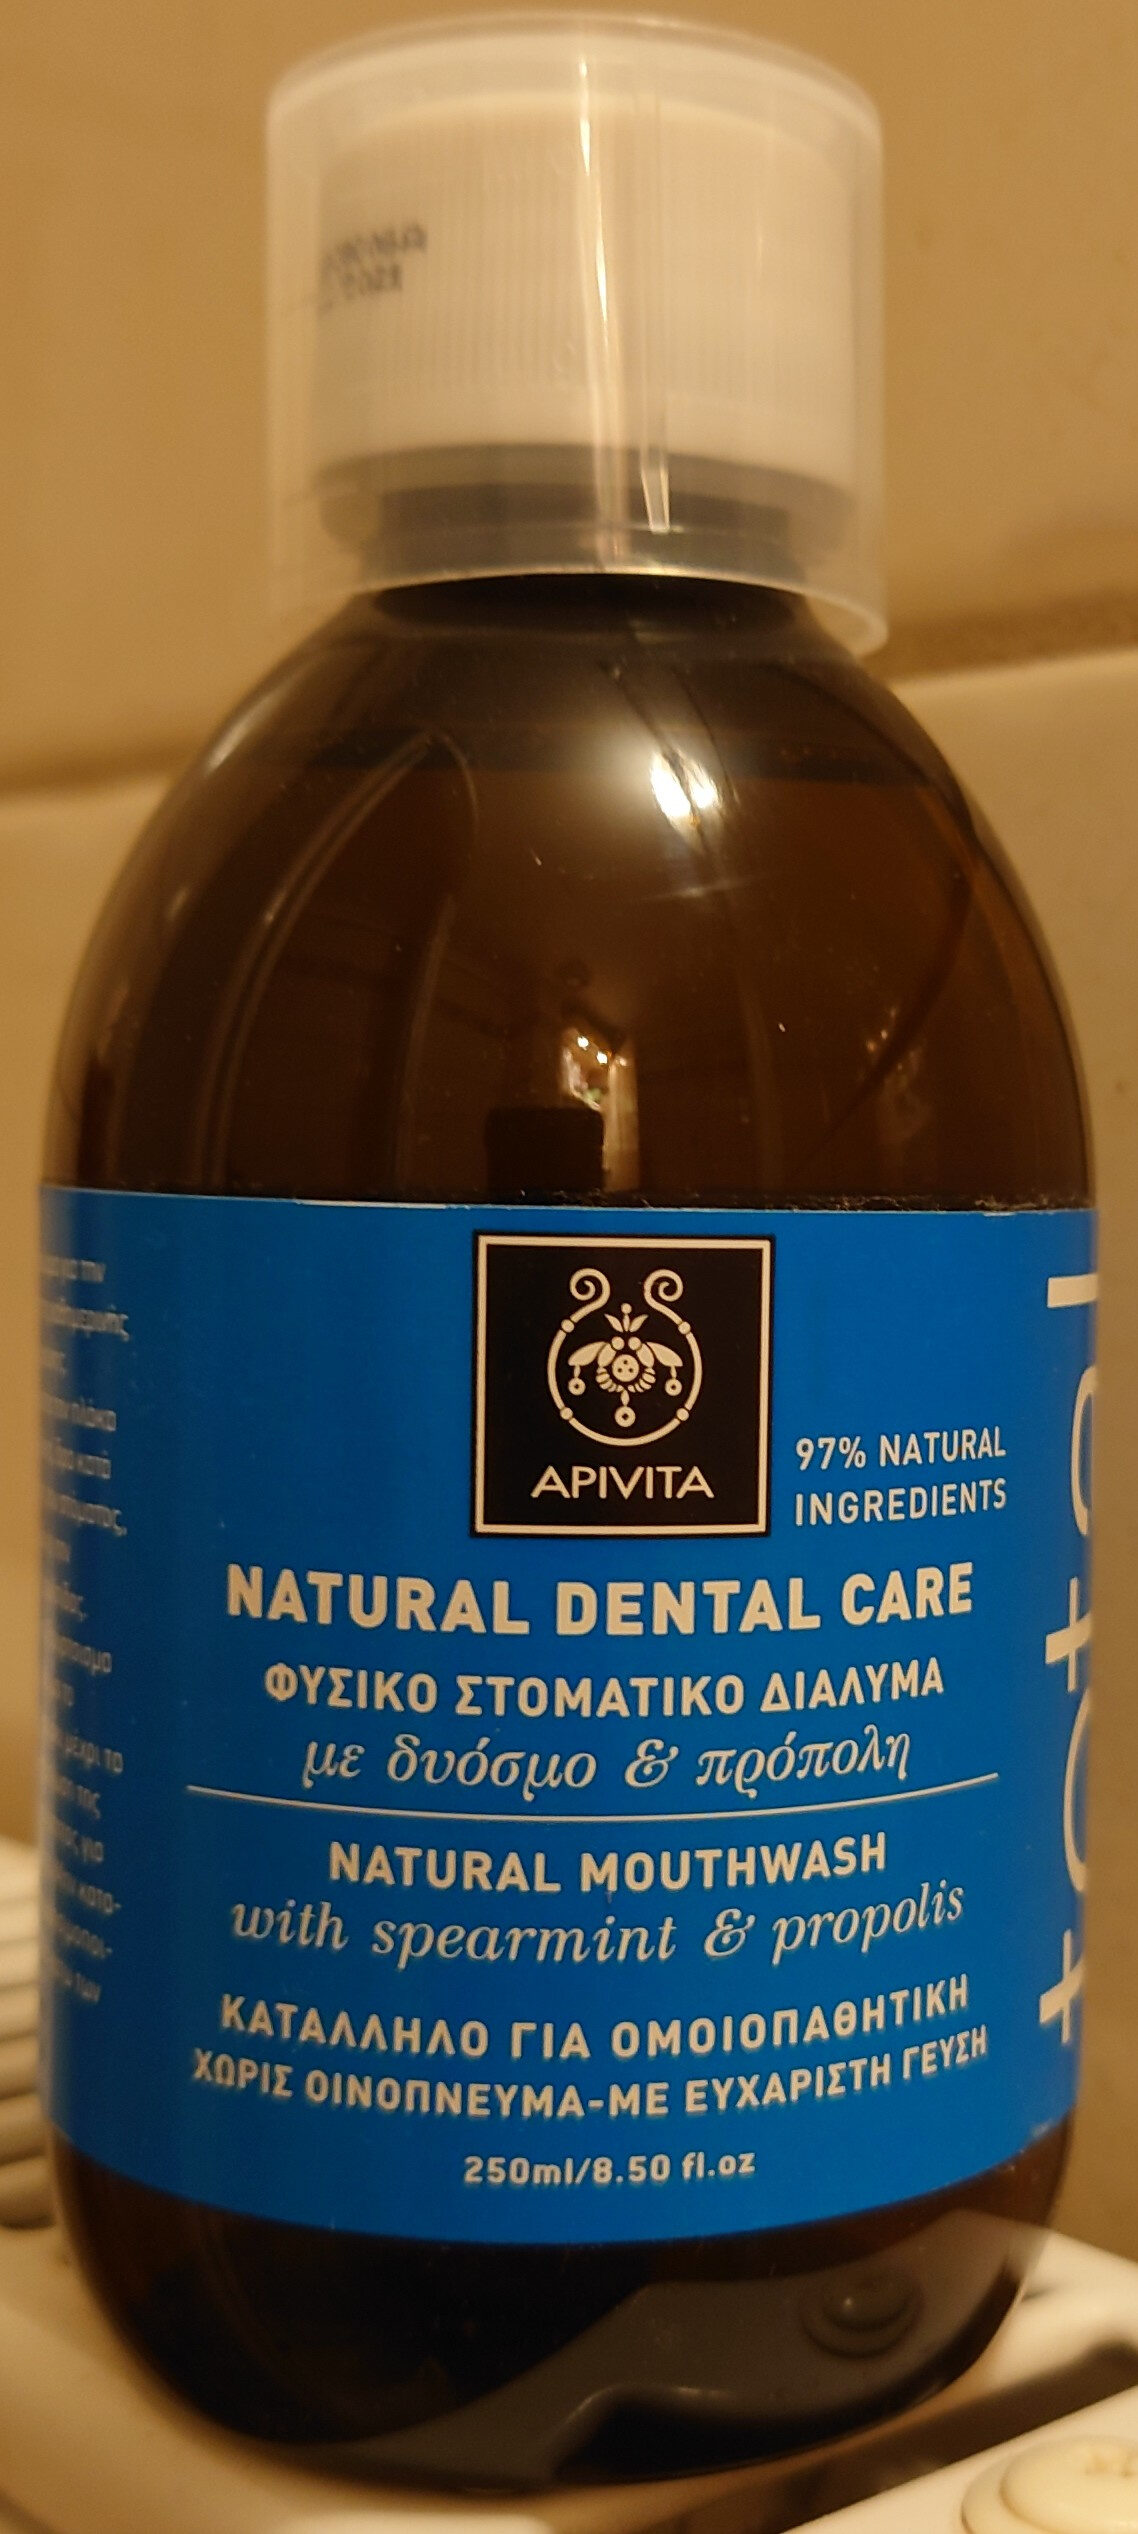 Natural Dental Care Mouthwash - Product - en